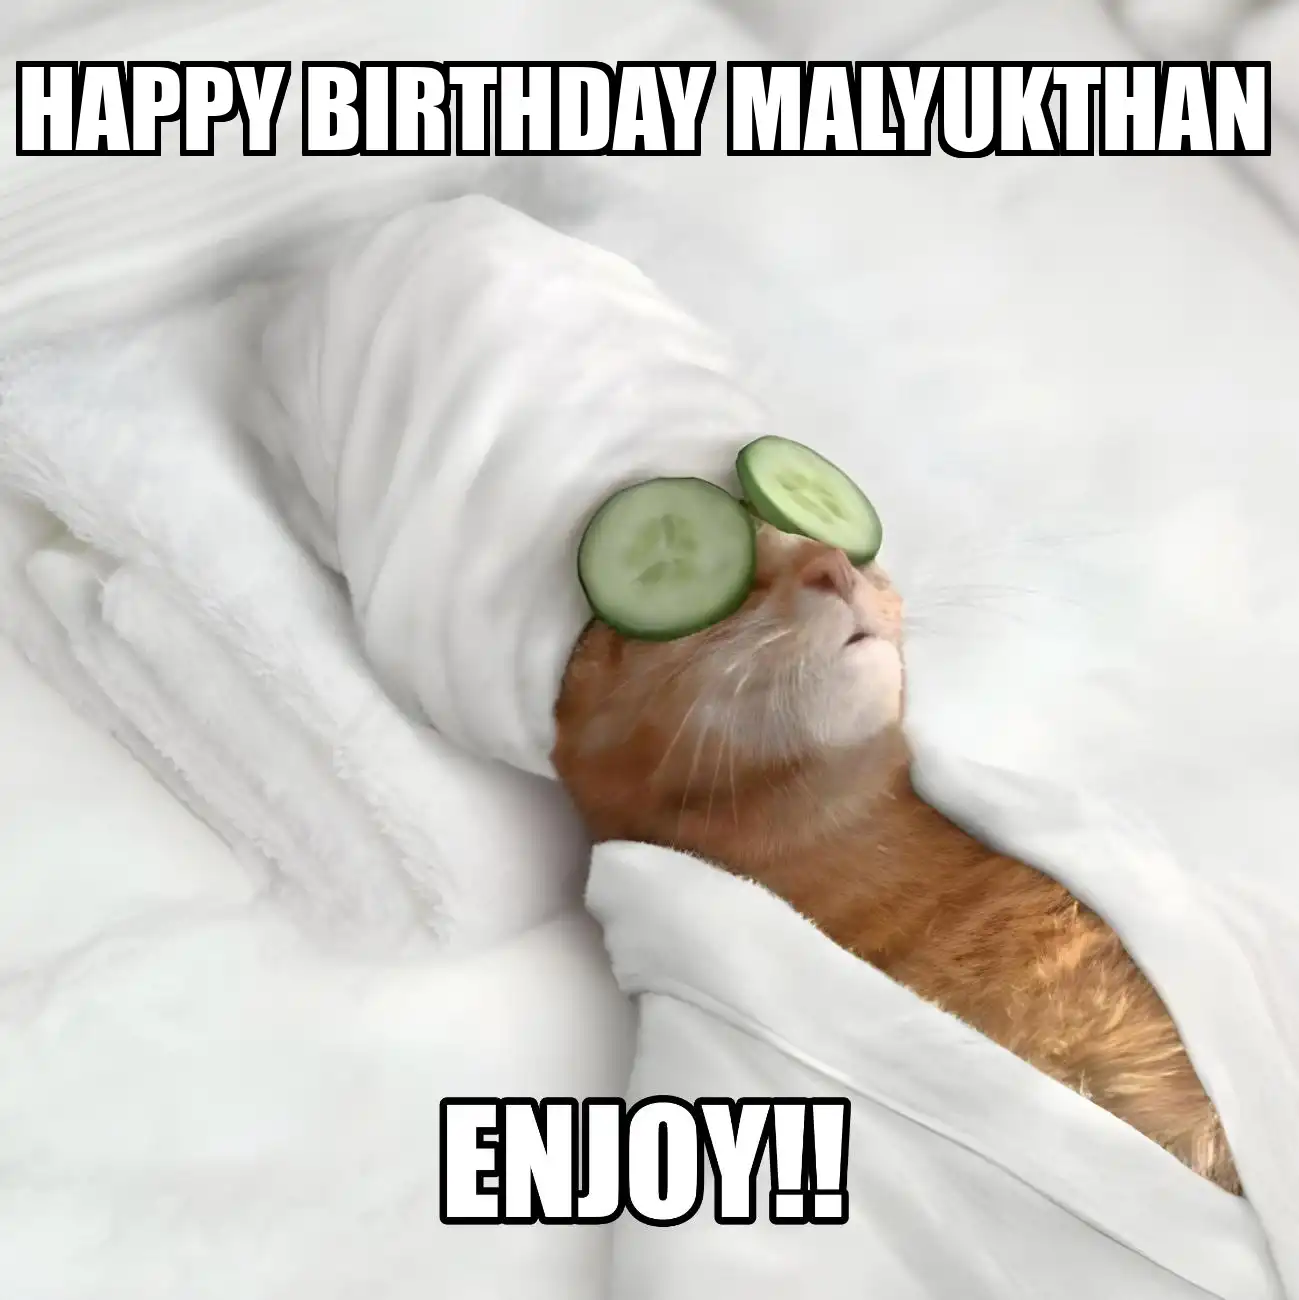 Happy Birthday Malyukthan Enjoy Cat Meme